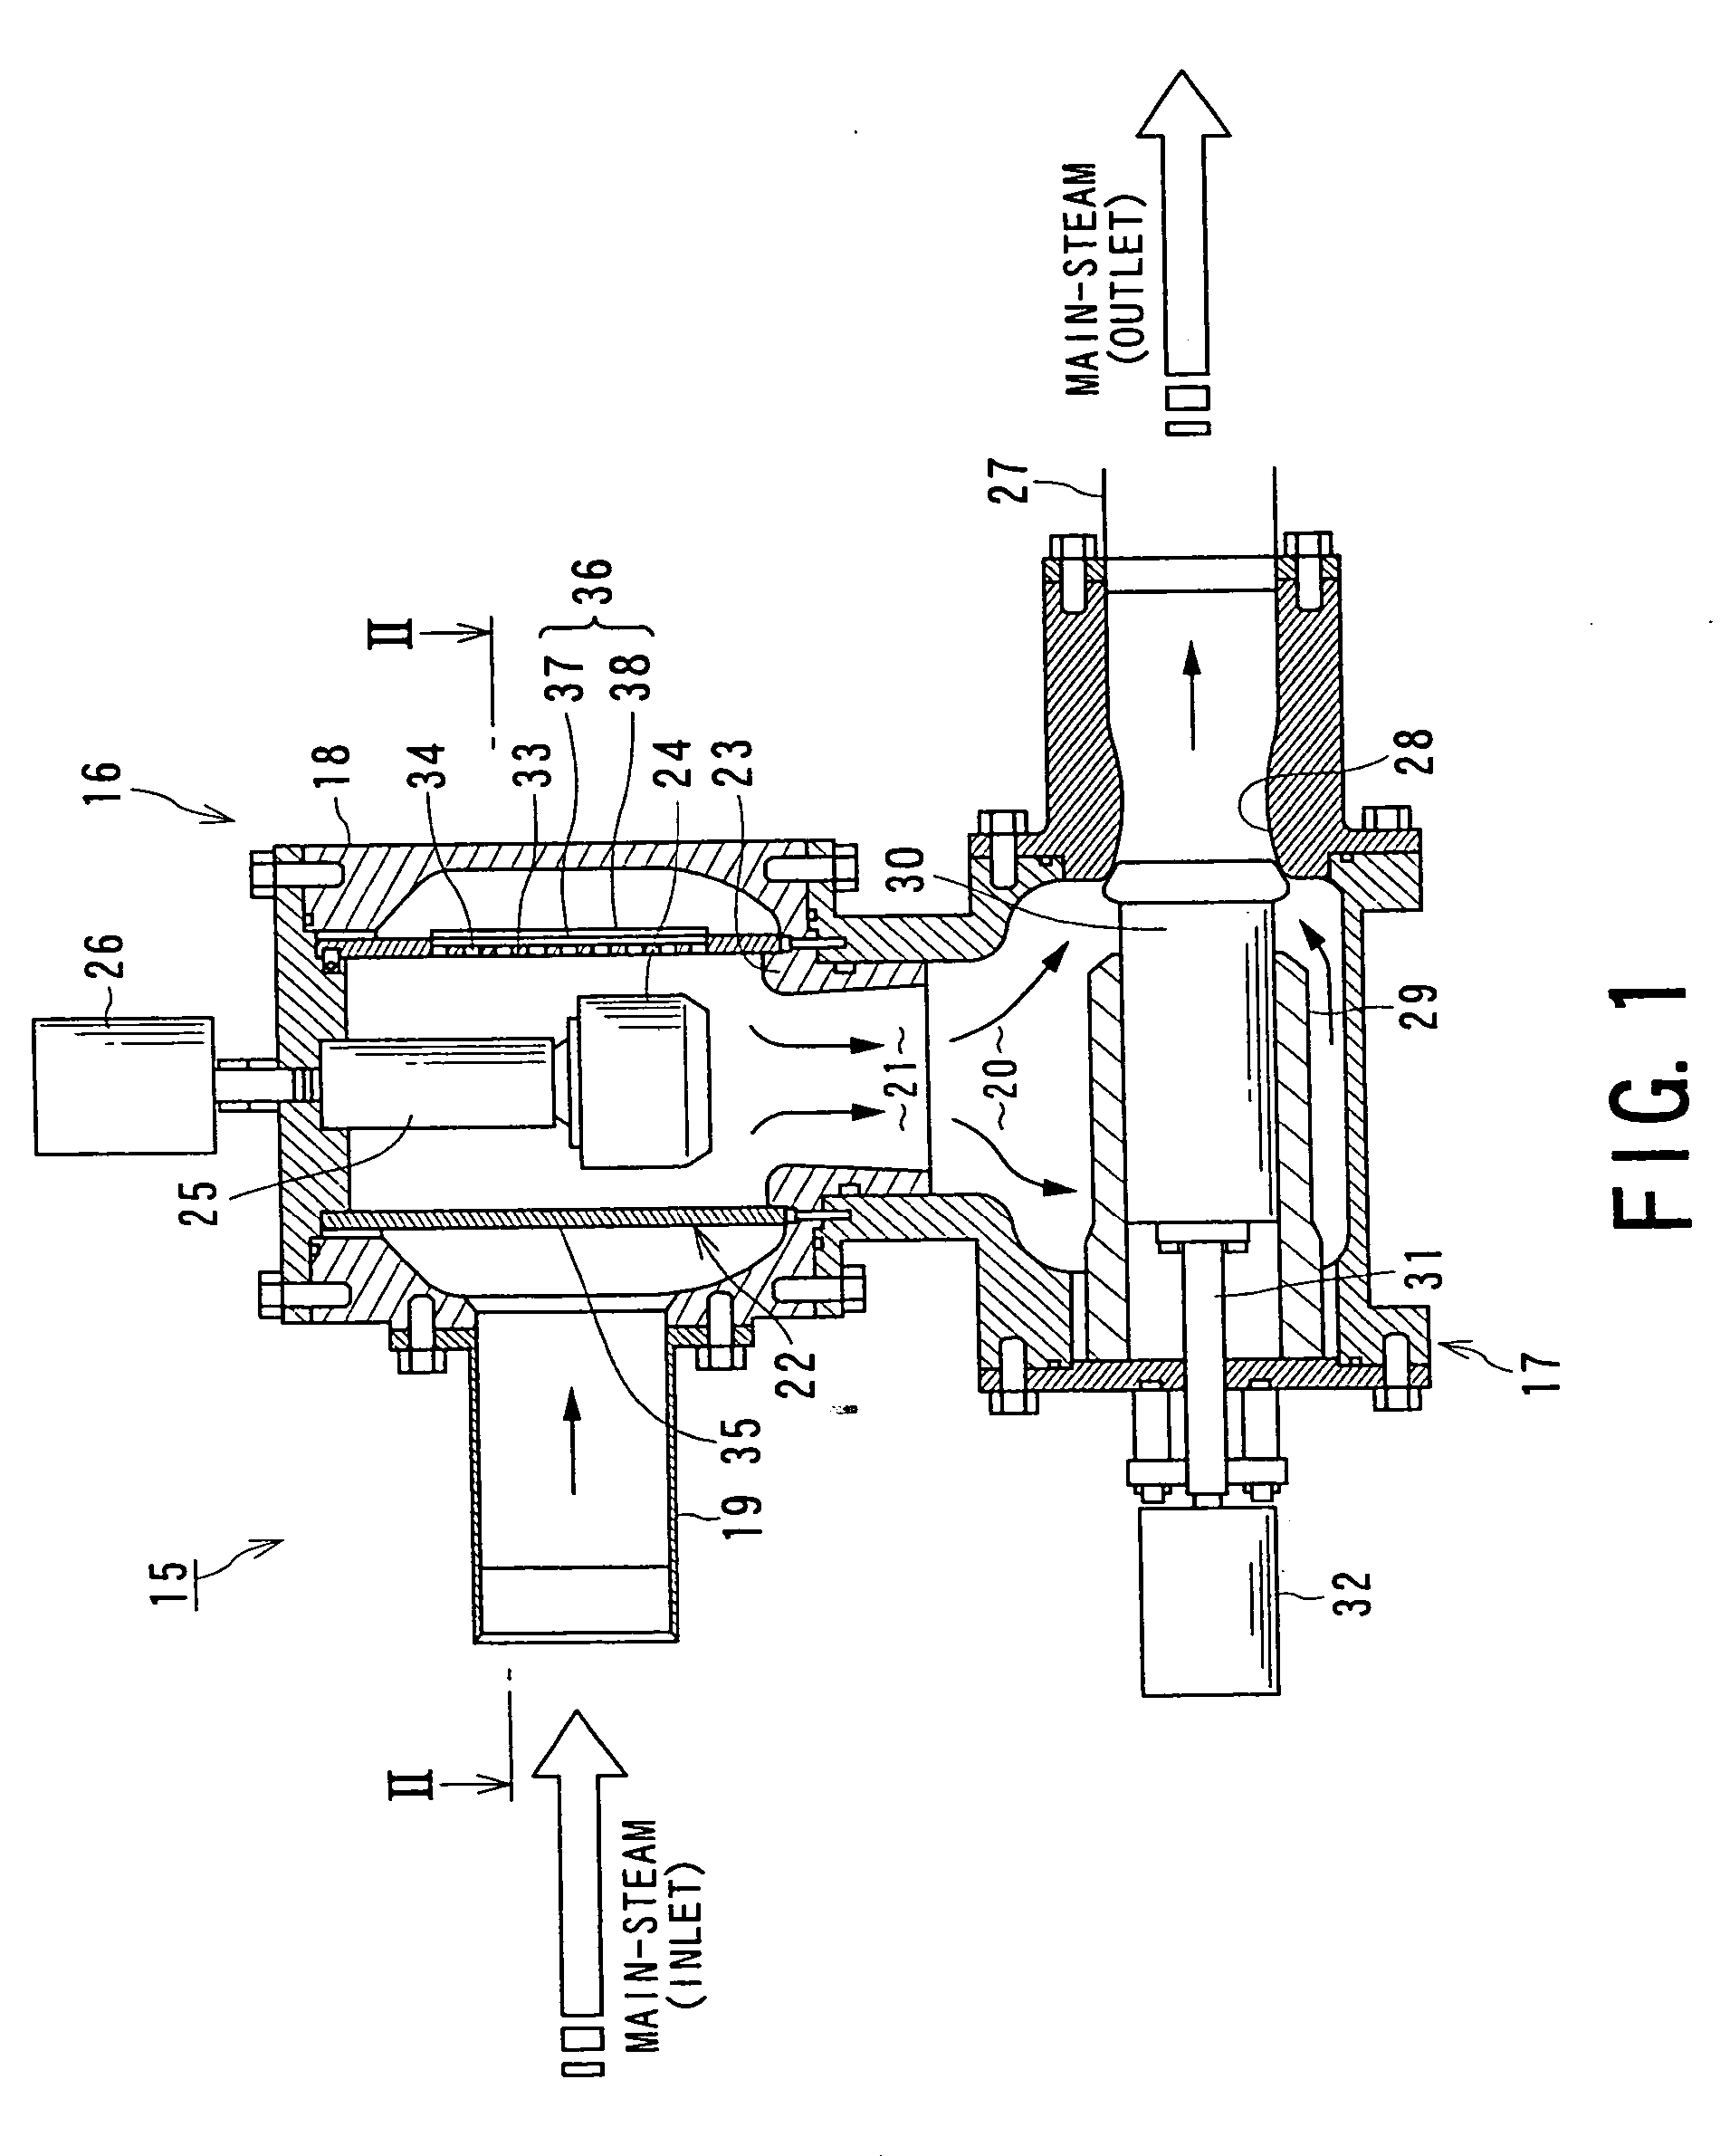 Steam valve